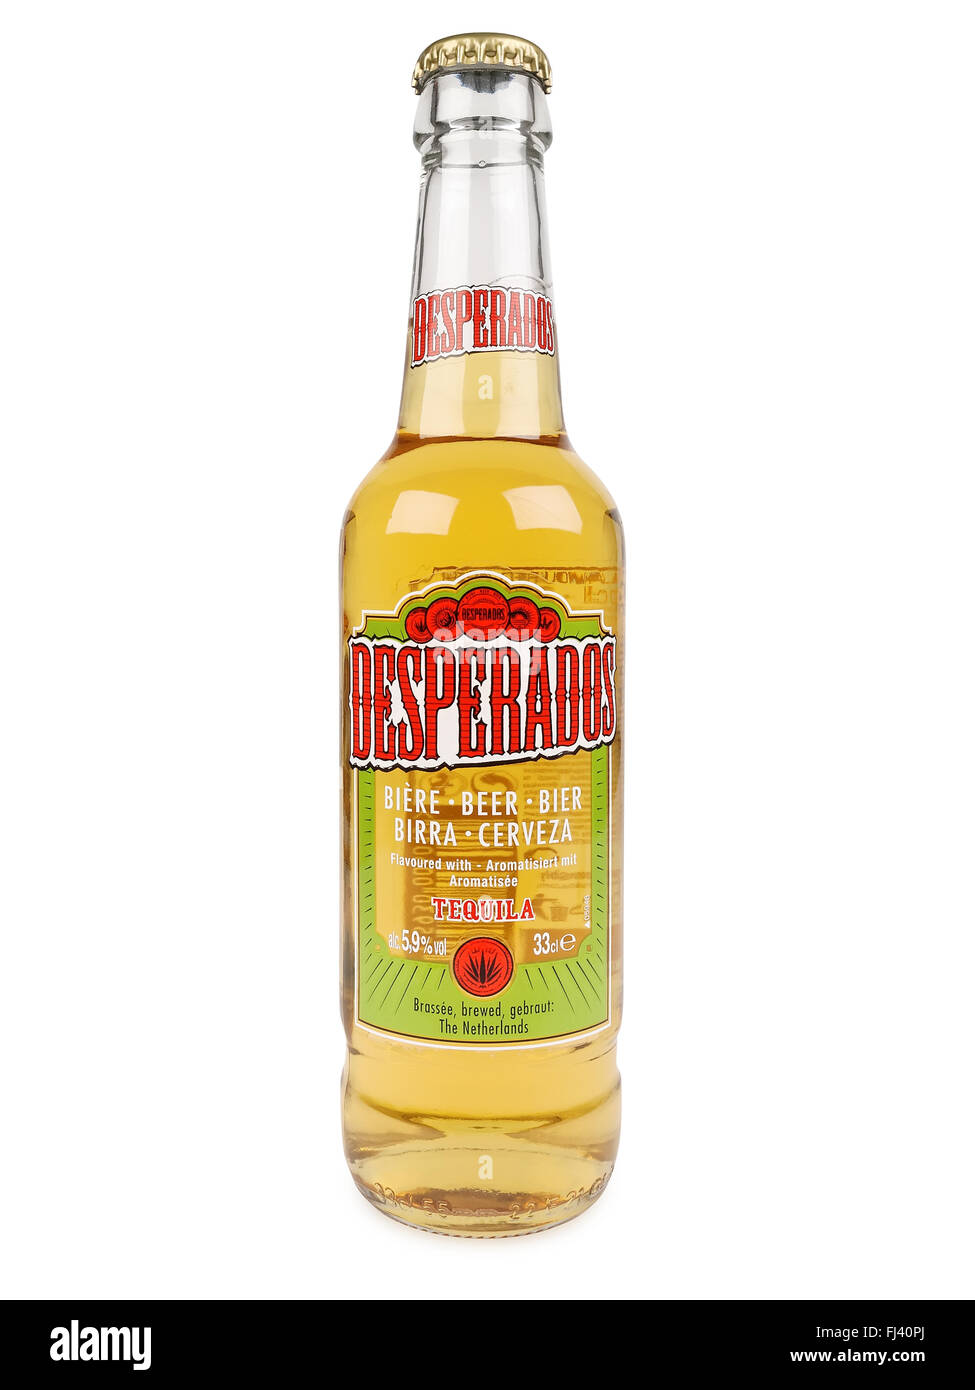 Desperados, Lager, aromatisiert mit Tequila ist ein beliebtes Bier von Heineken produziert. Stockfoto